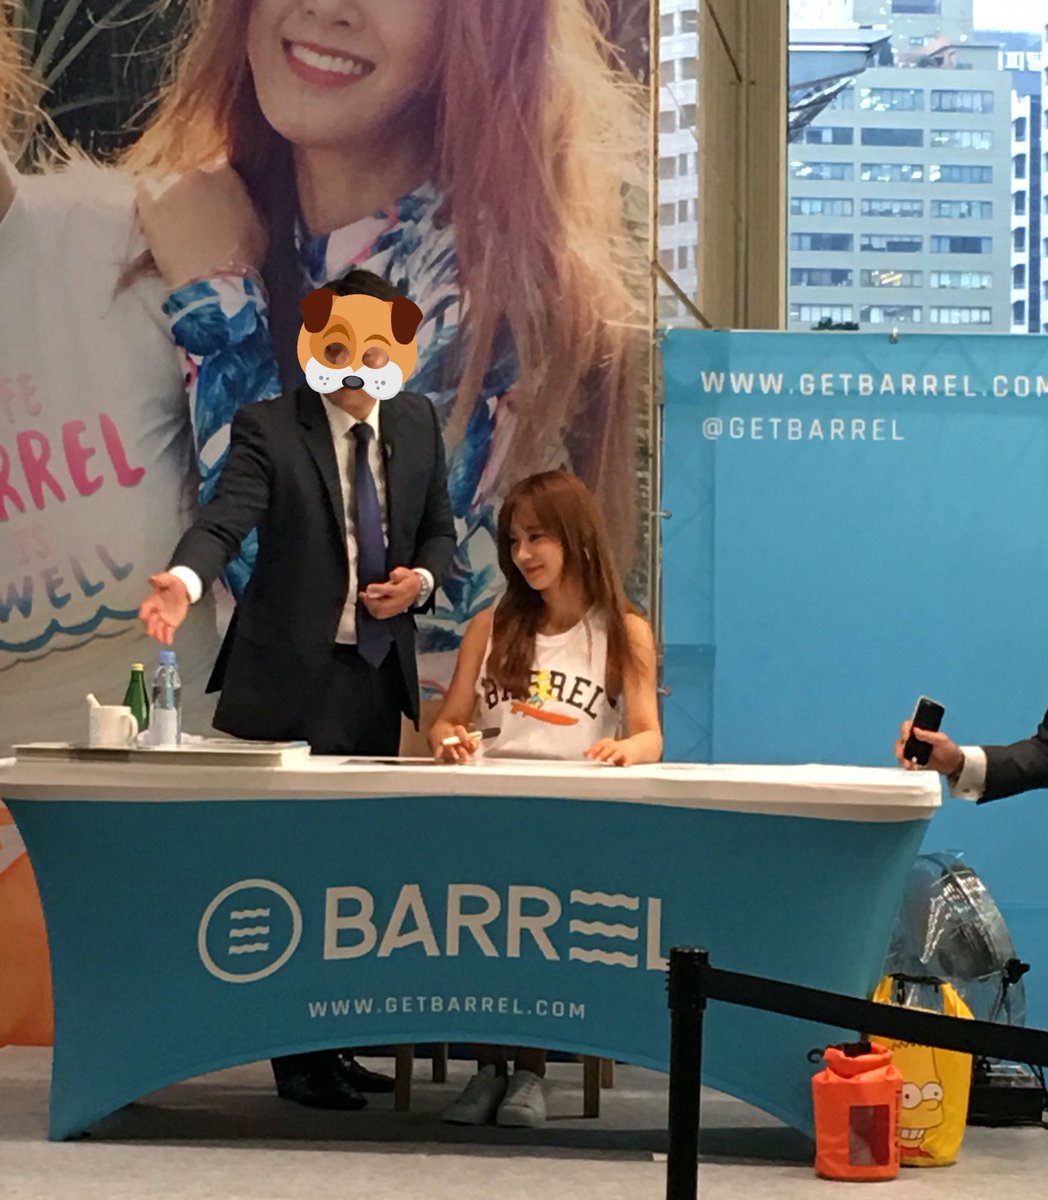 [PIC][29-07-2016]Yuri tham dự buổi Fansign cho thương hiệu “BARREL” vào chiều nay CohwEyvVIAAP8UD